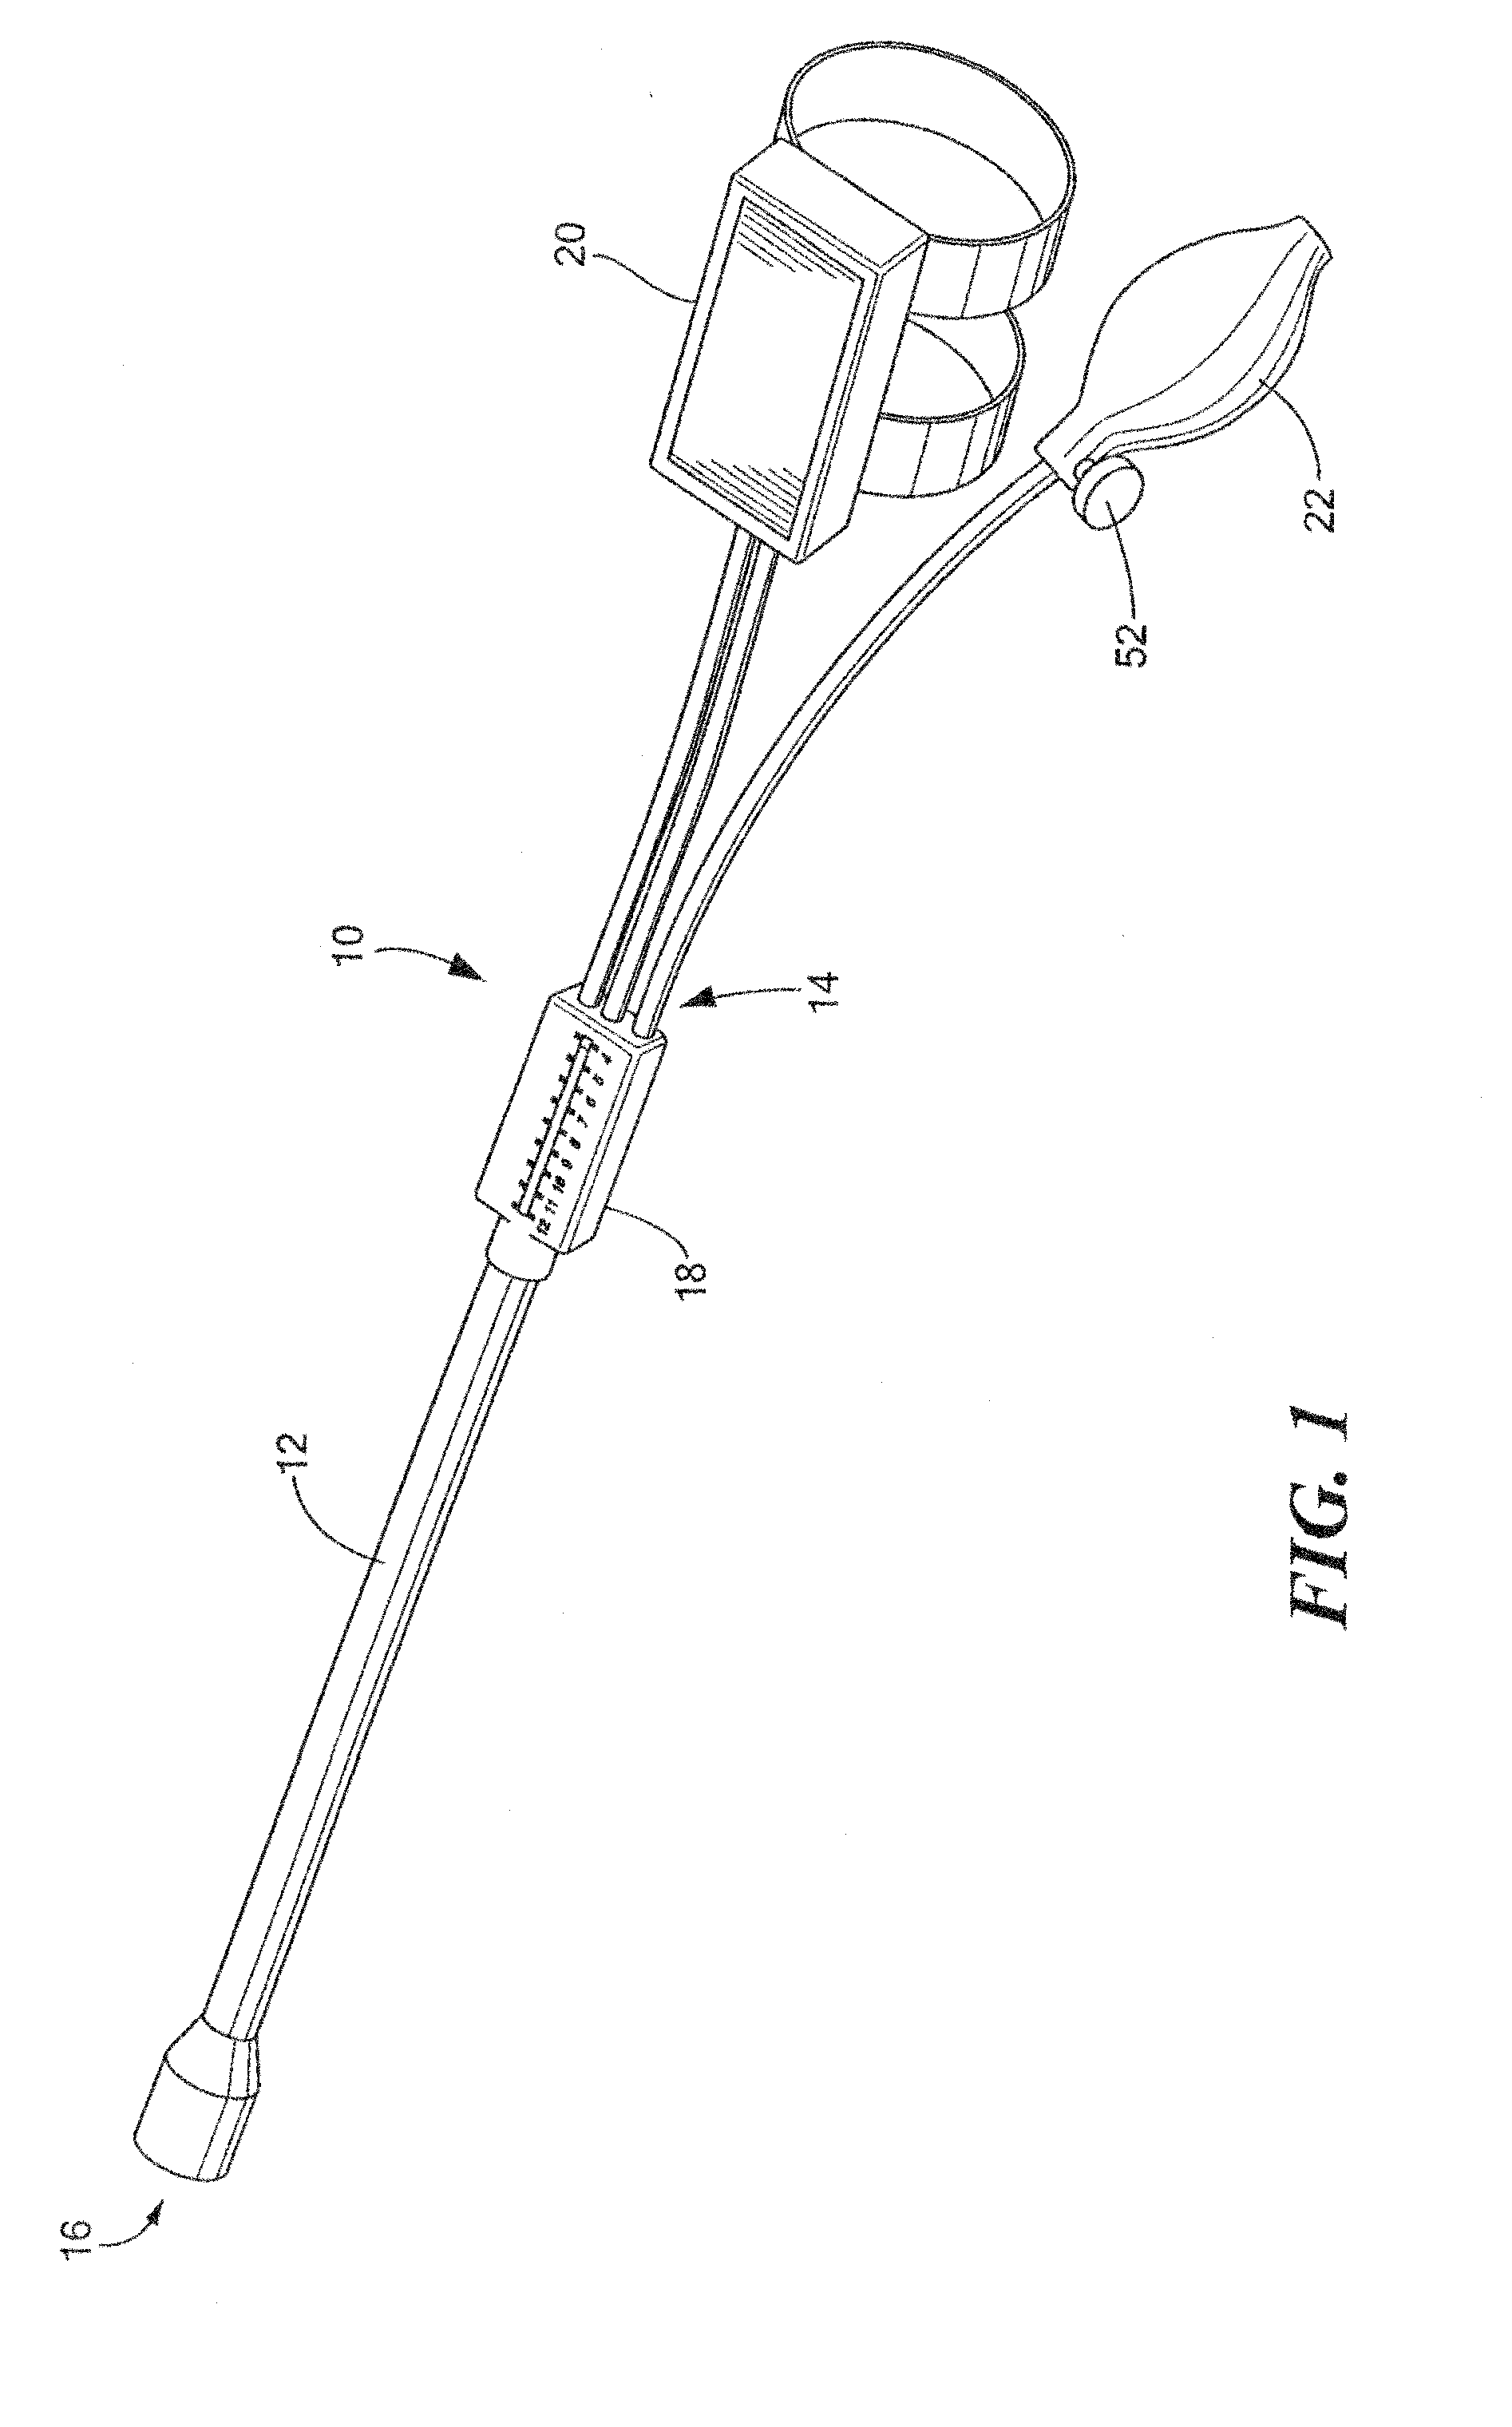 Cervical dilation measurement apparatus